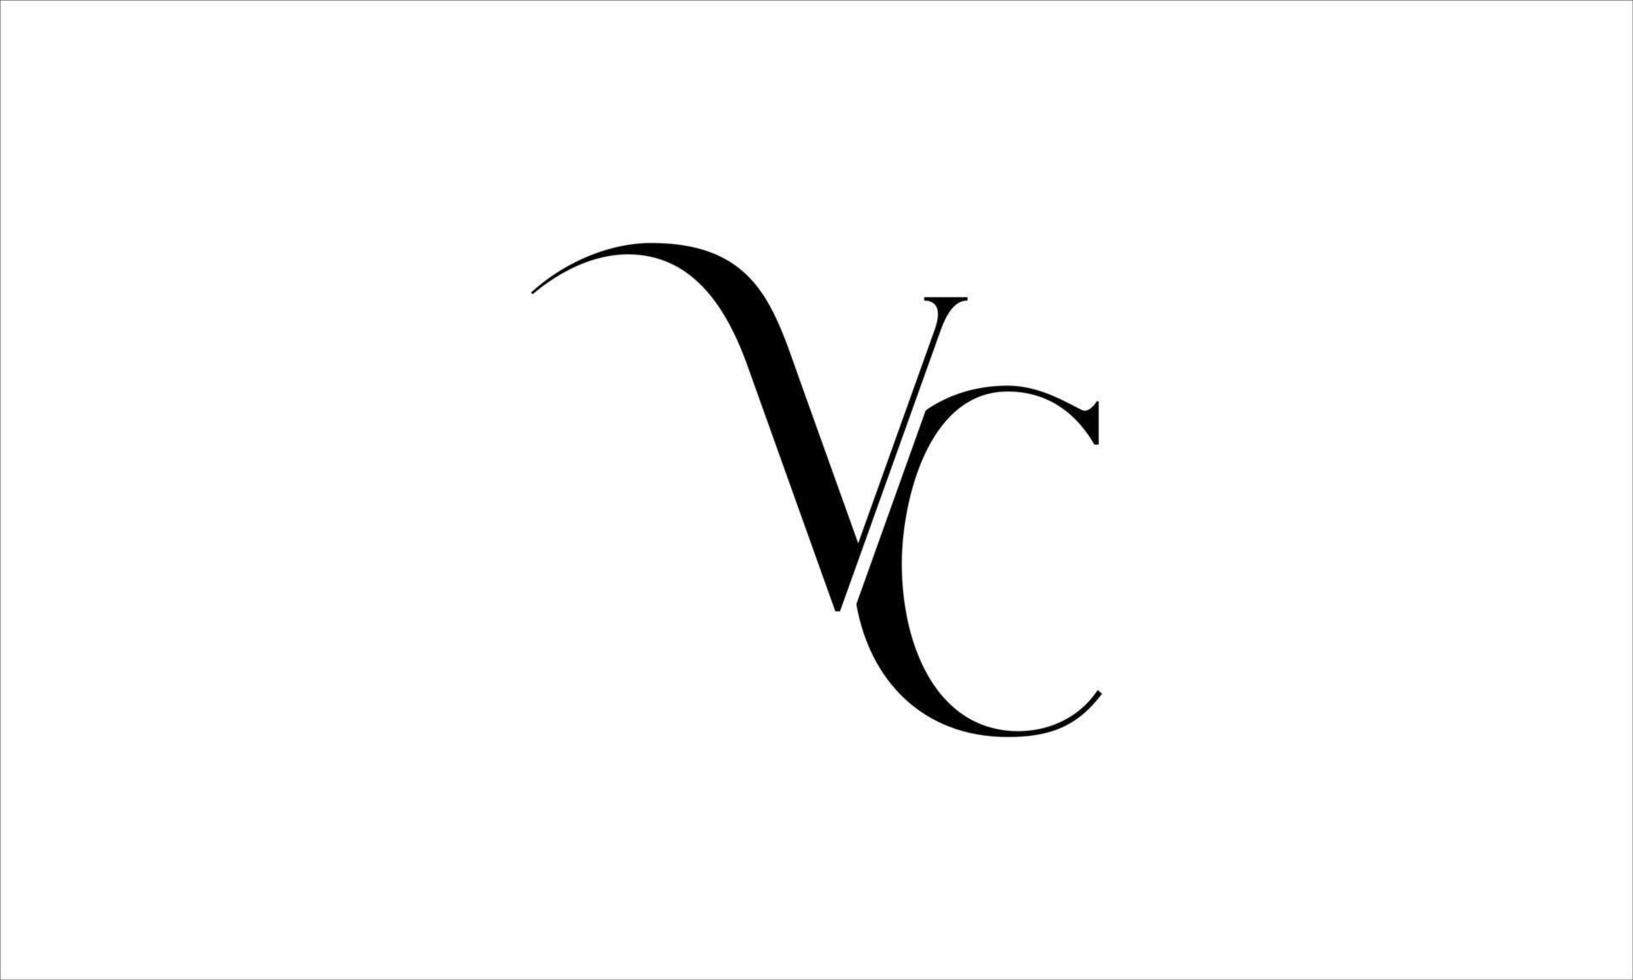 diseño de logotipo vc. vector de diseño de icono de logotipo de letra vc inicial pro vector.